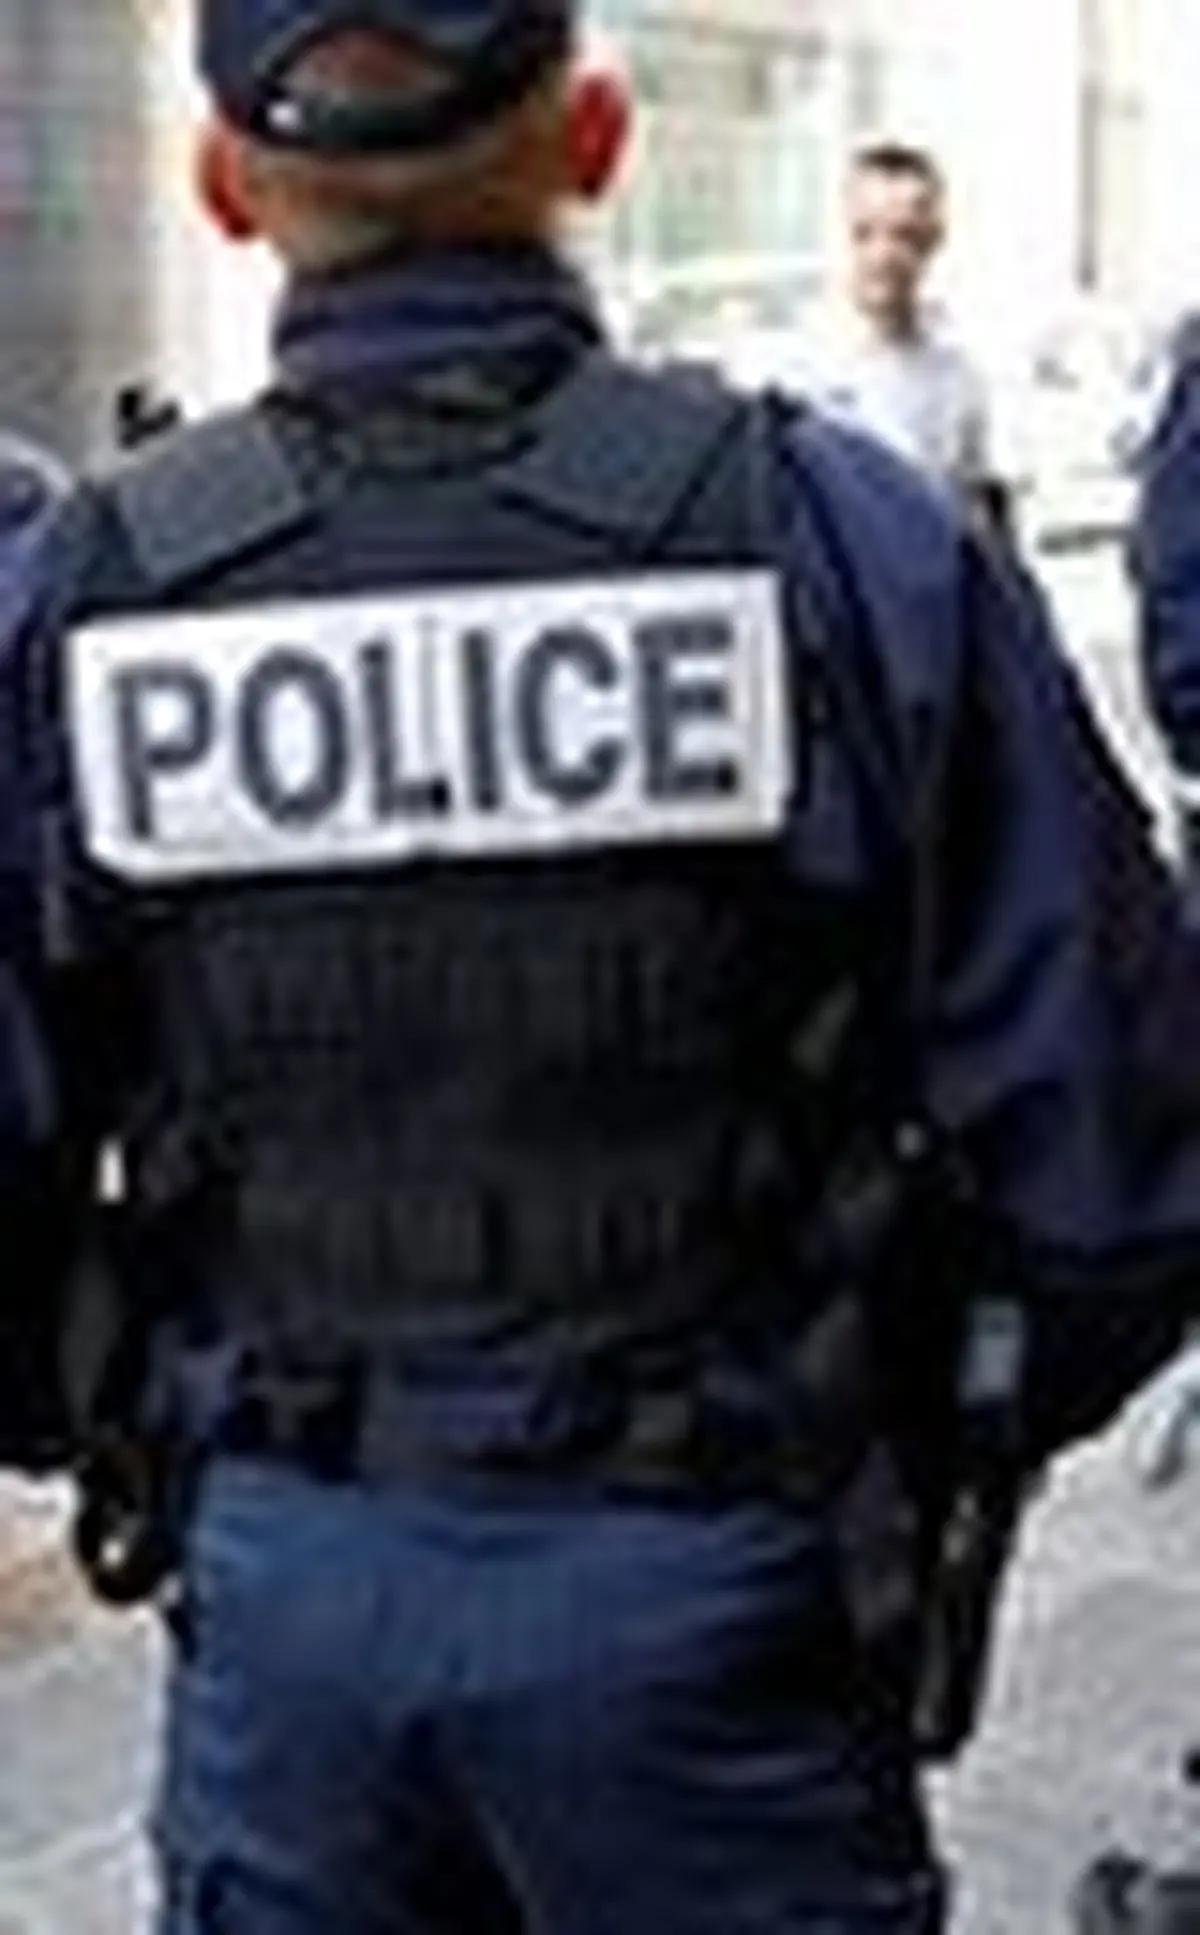  4 ایرانی در فرانسه به اتهام دزدی در لباس پلیس بازداشت شدند